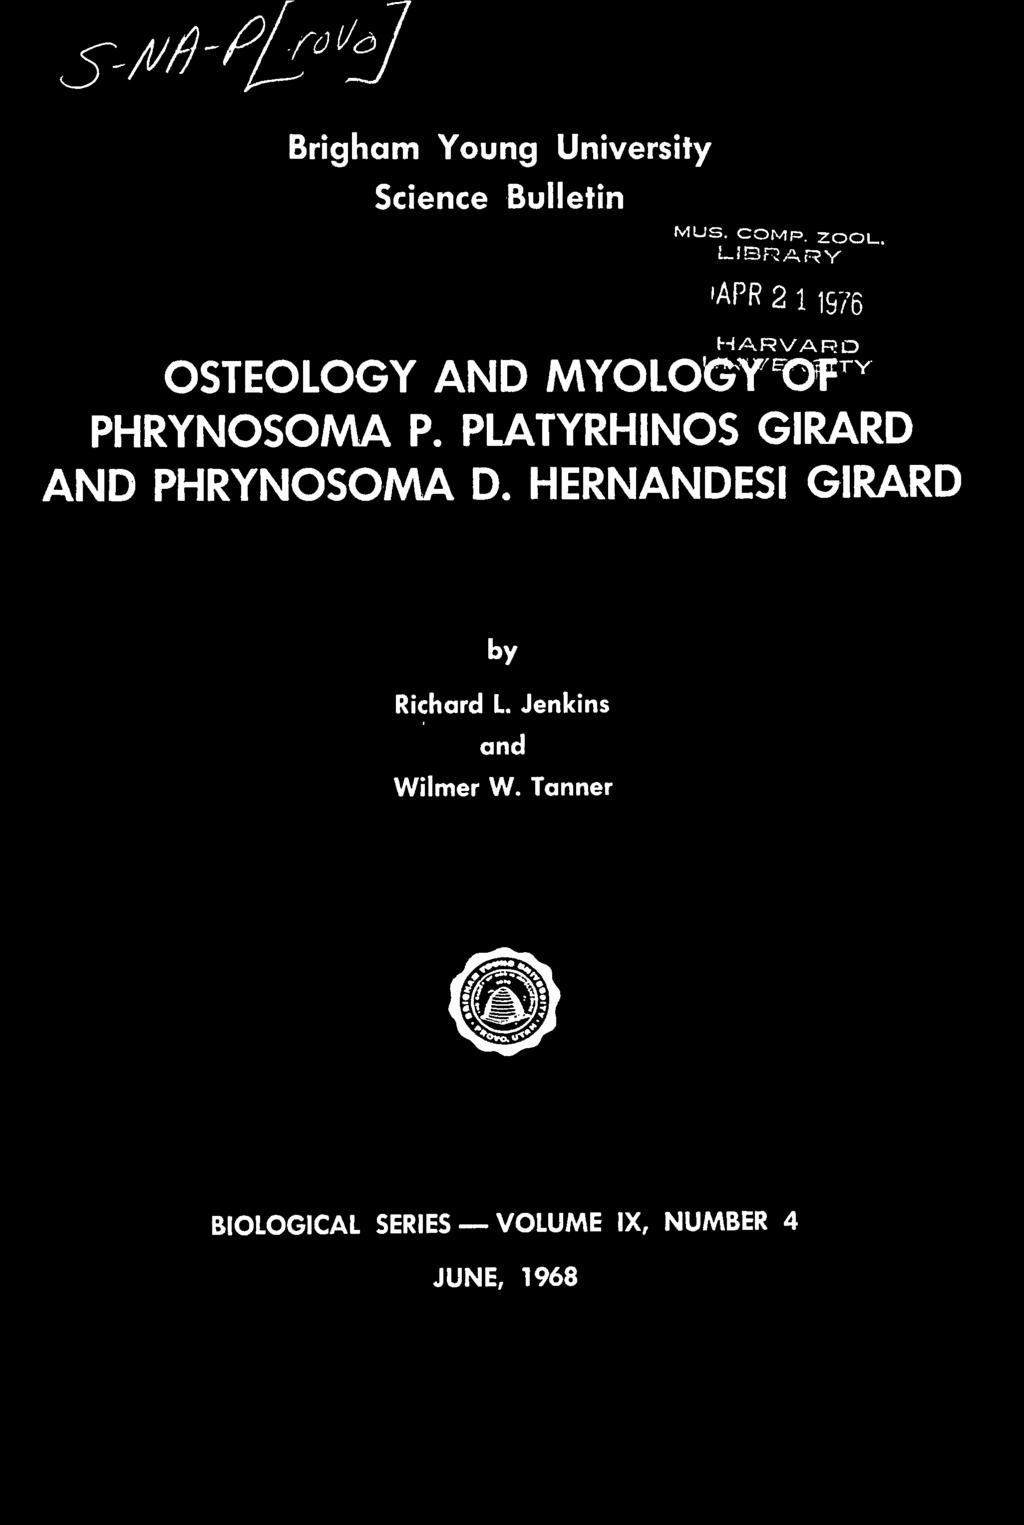 PLATYRHINOS GIRARD AND PHRYNOSOMA D. HERNANDESI GIRARD by Richard L.